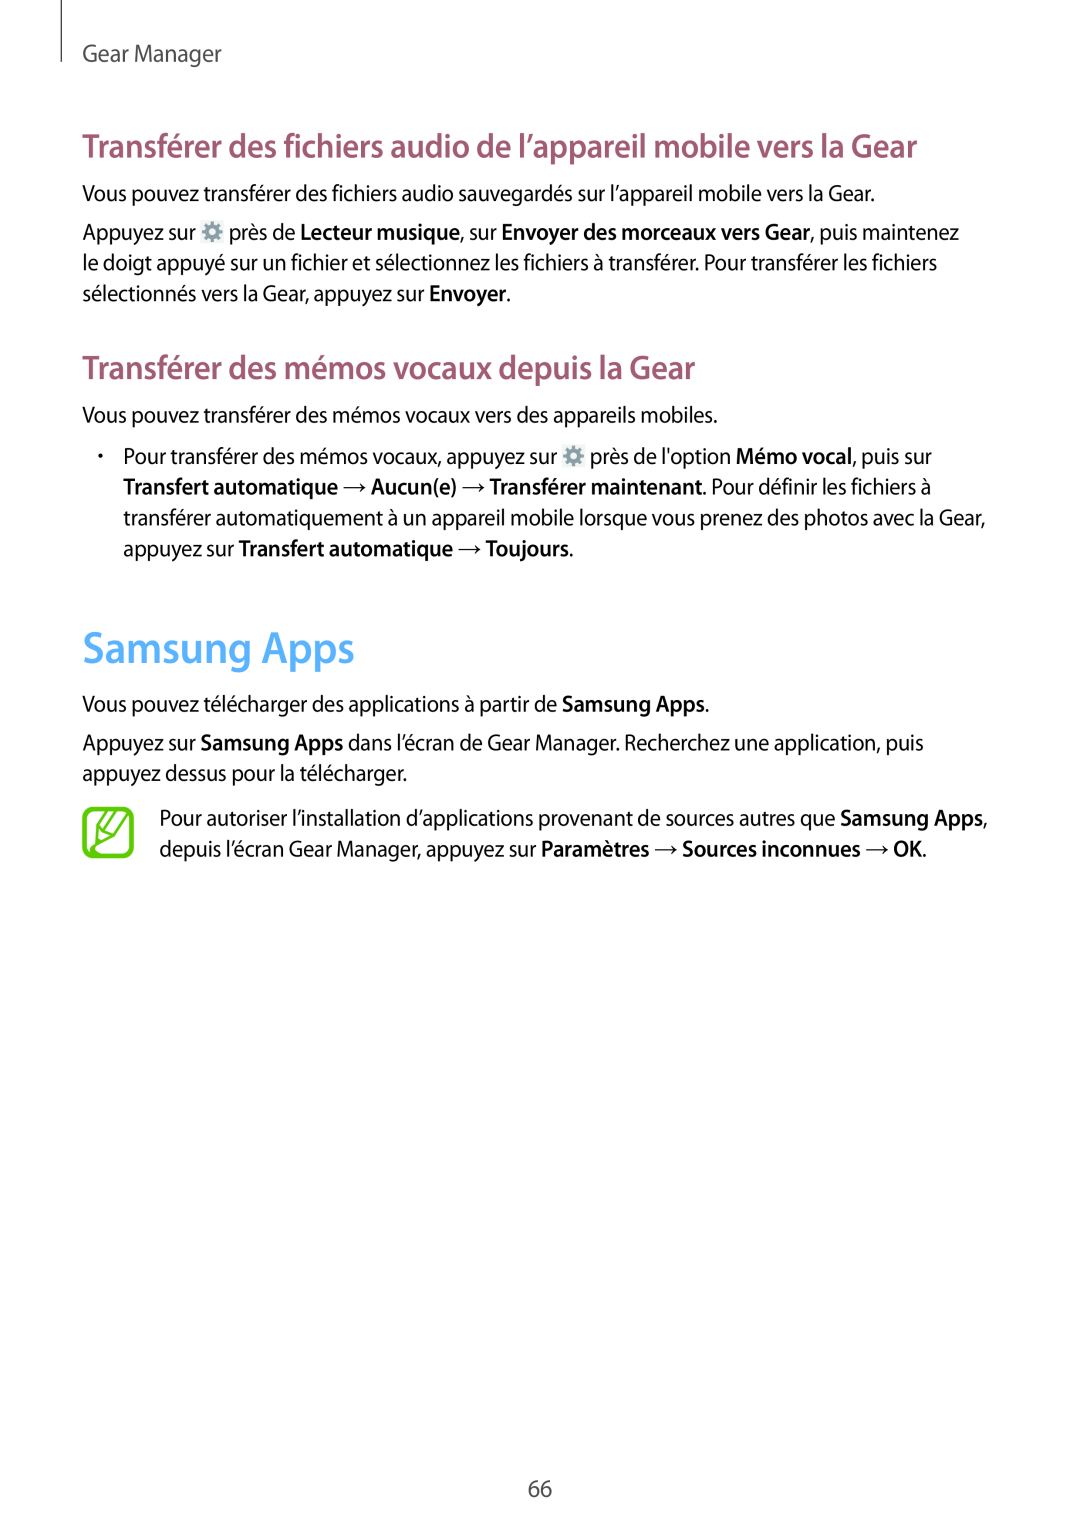 Samsung SM-R3810ZAAXEF manual Samsung Apps, Transférer des fichiers audio de l’appareil mobile vers la Gear, Gear Manager 